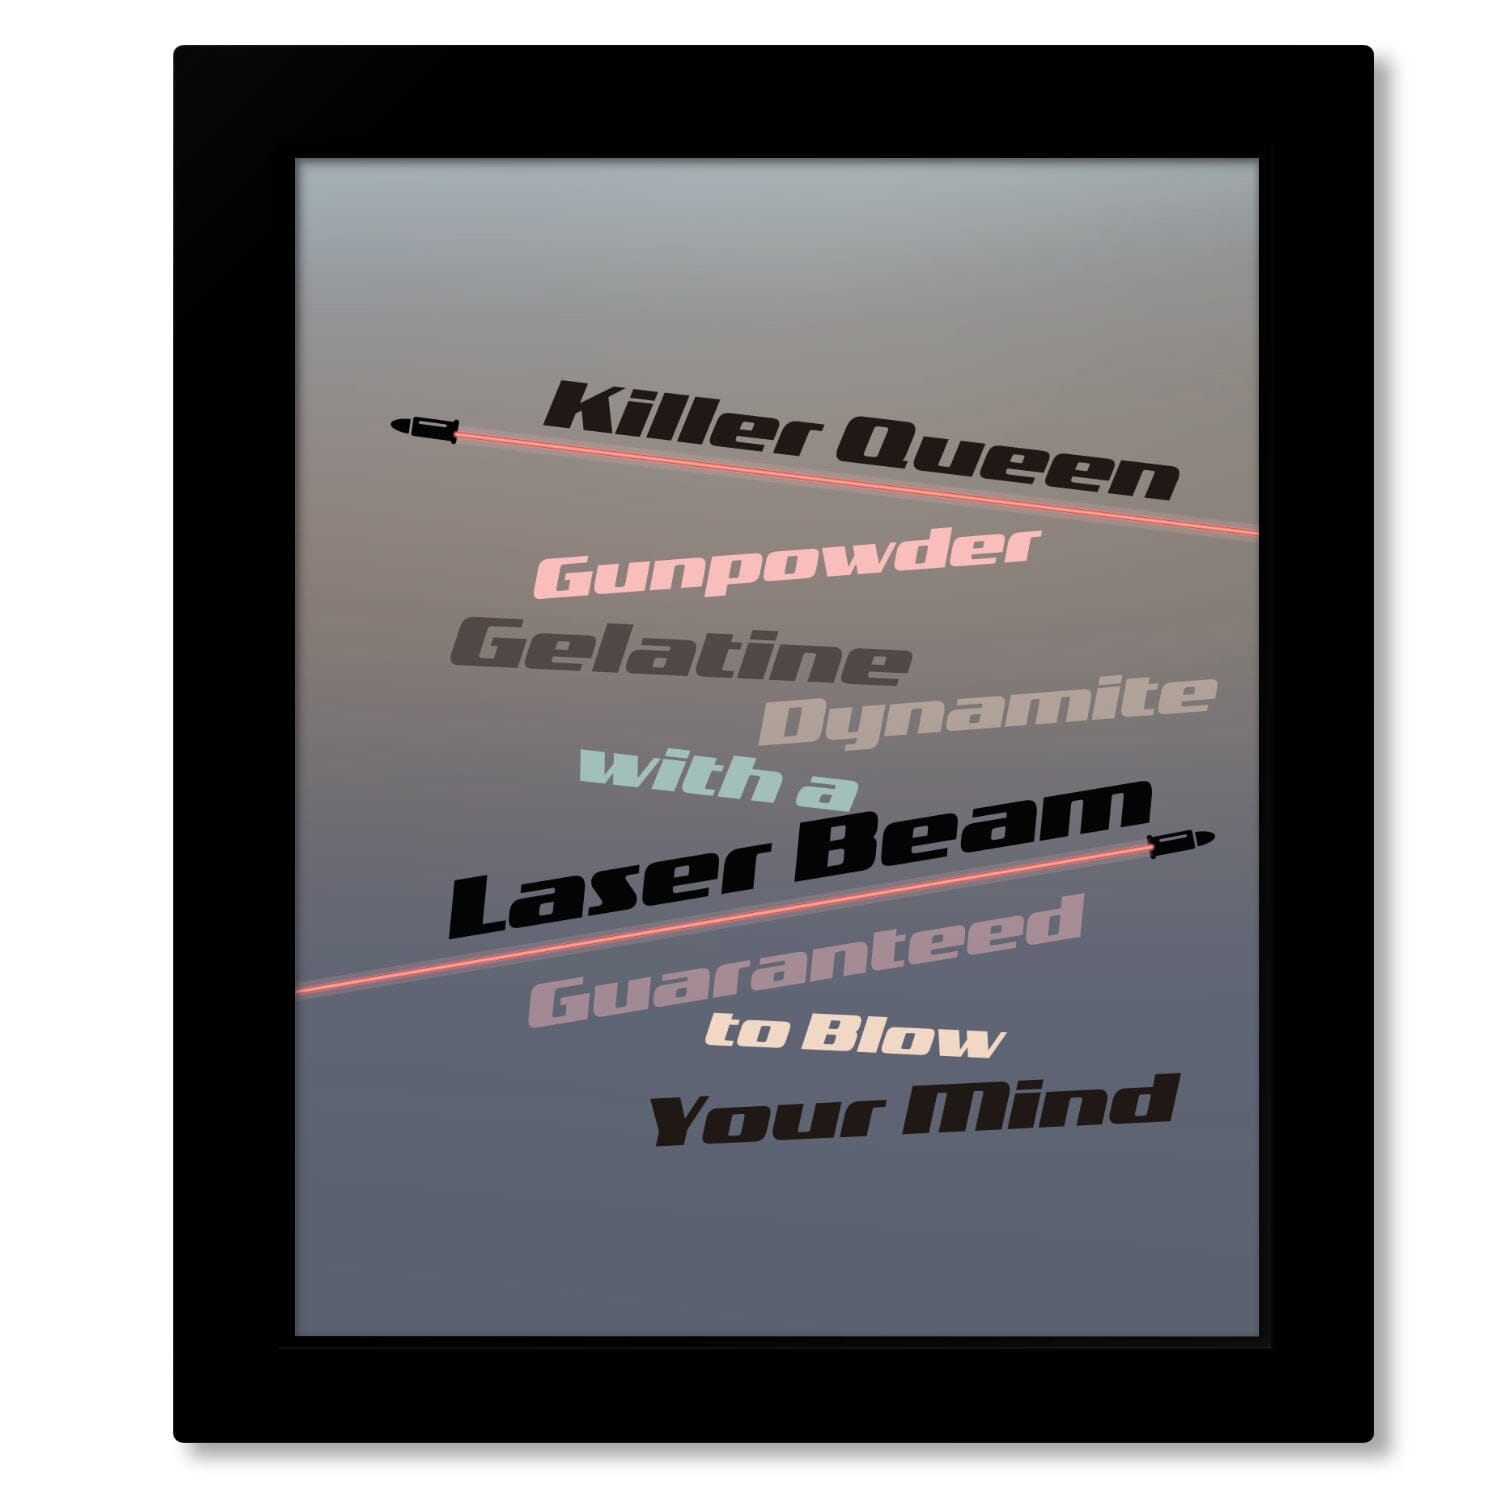 Killer Queen by Queen - Song Lyrics Inspired Art Wall Decor Song Lyrics Art Song Lyrics Art 8x10 Framed Print (without mat) 